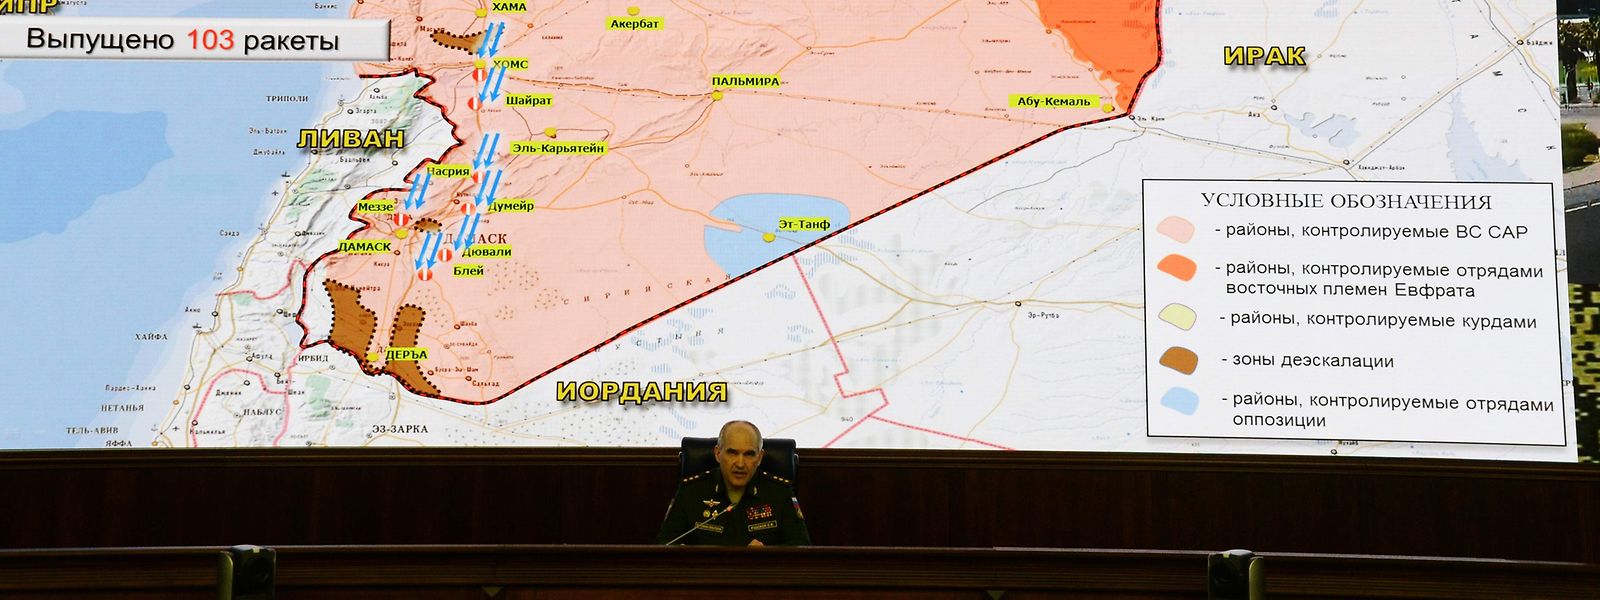 Die syrische Luftabwehr habe 71 der 103 Marschflugkörper abgeschossen, teilte Generaloberst Sergej Rudskoj vom russischen Verteidigungsministerium mit.